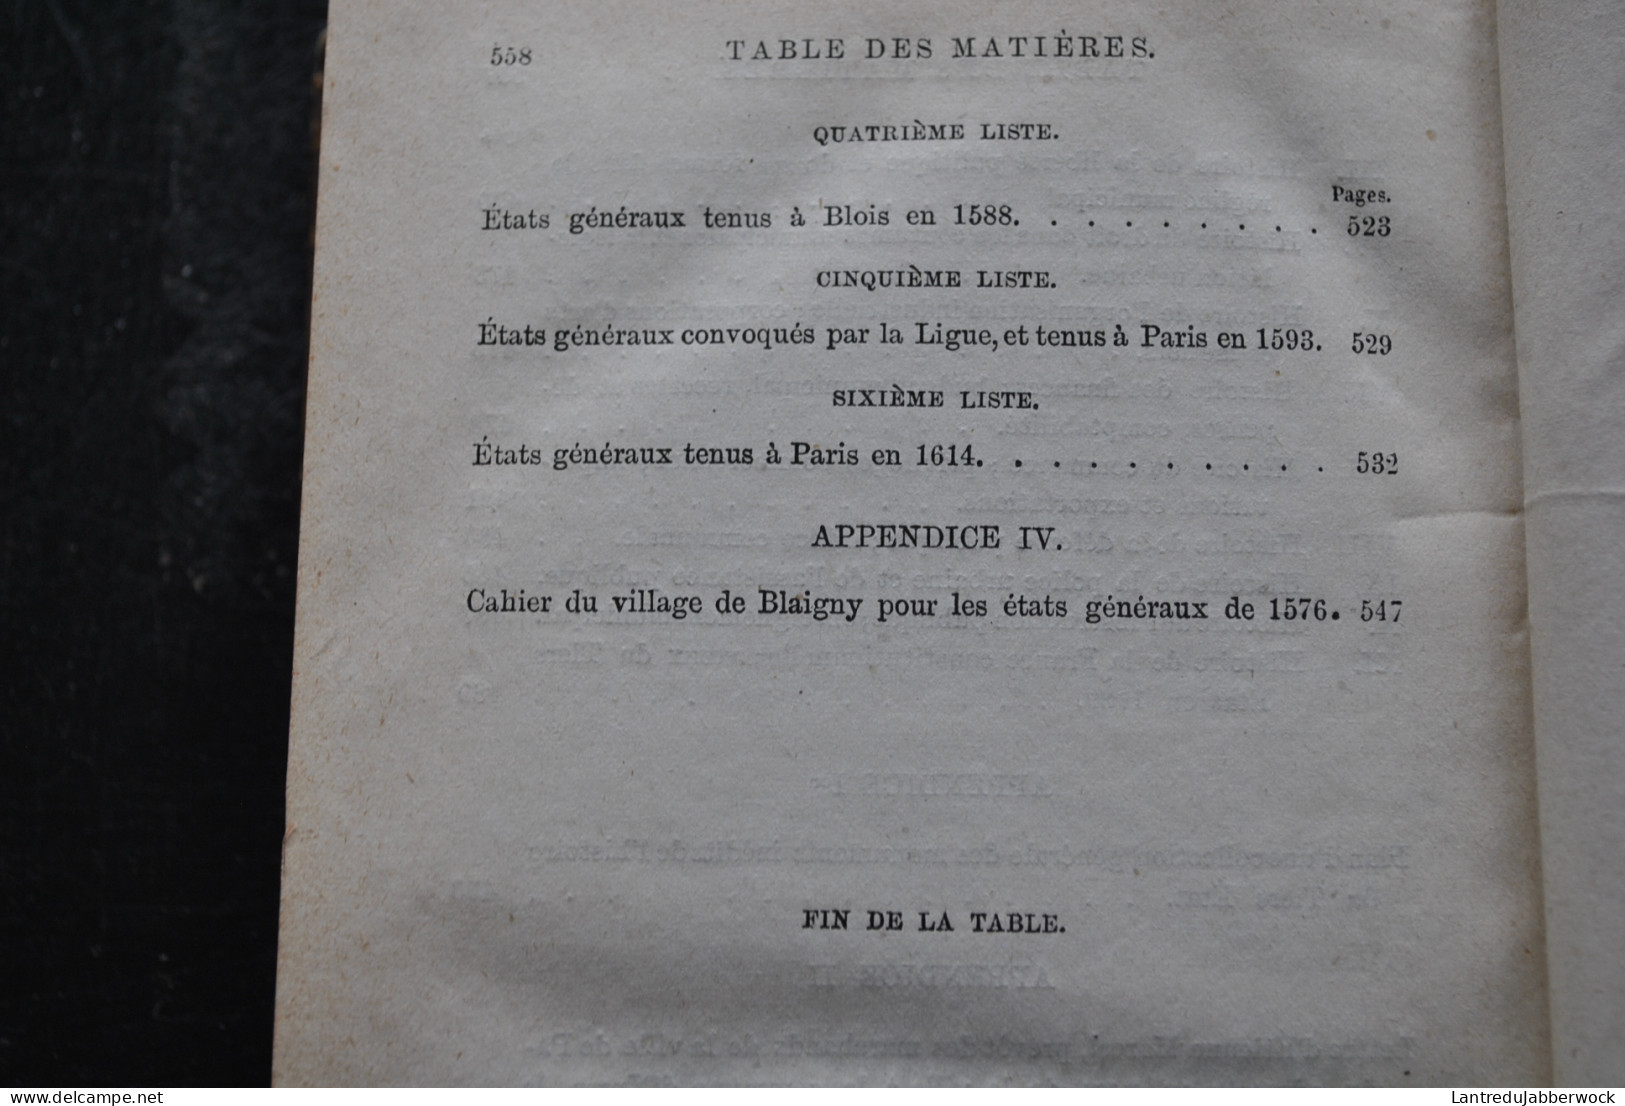 Augustin THIERRY Essais sur l'histoire du Tiers Etat Formation Librairie de Firmin-Didot 1883 Reliure dos cuir France